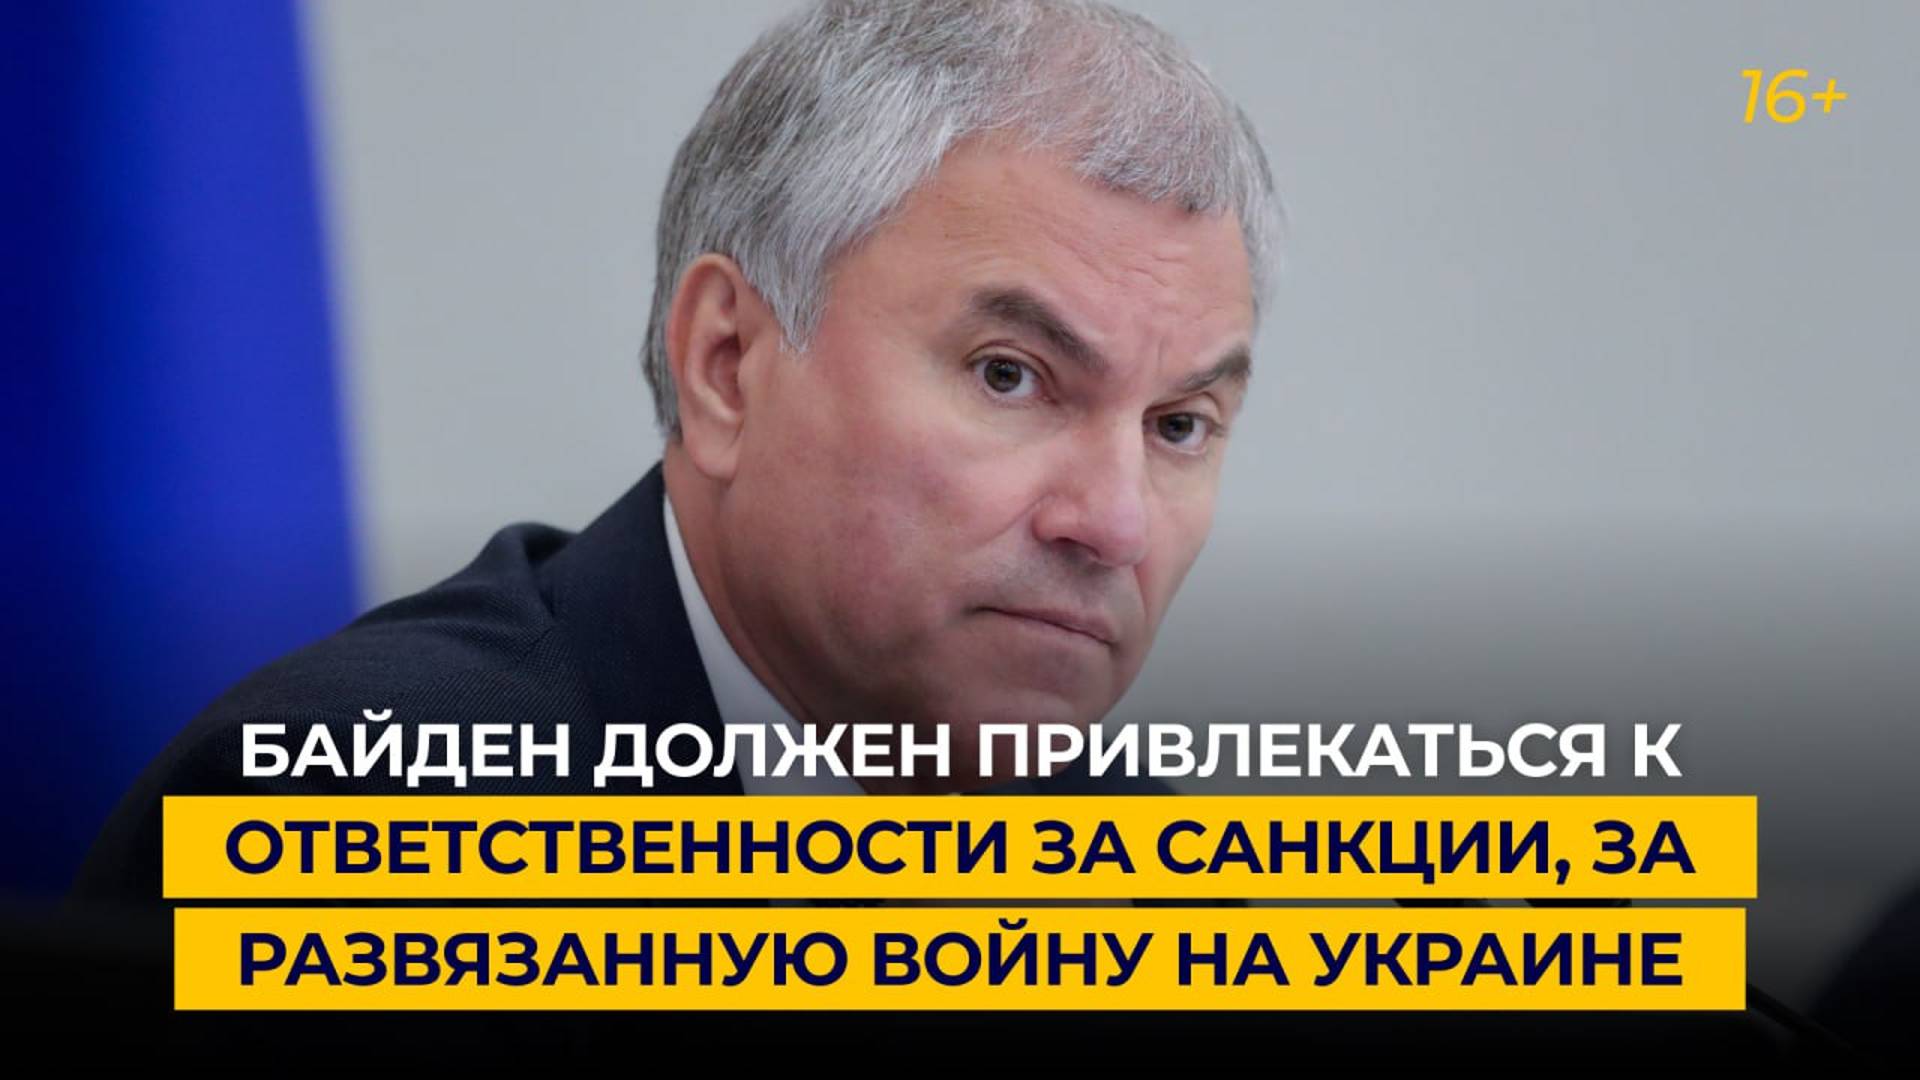 «Байден должен привлекаться к ответственности за санкции, за развязанную войну на Украине»